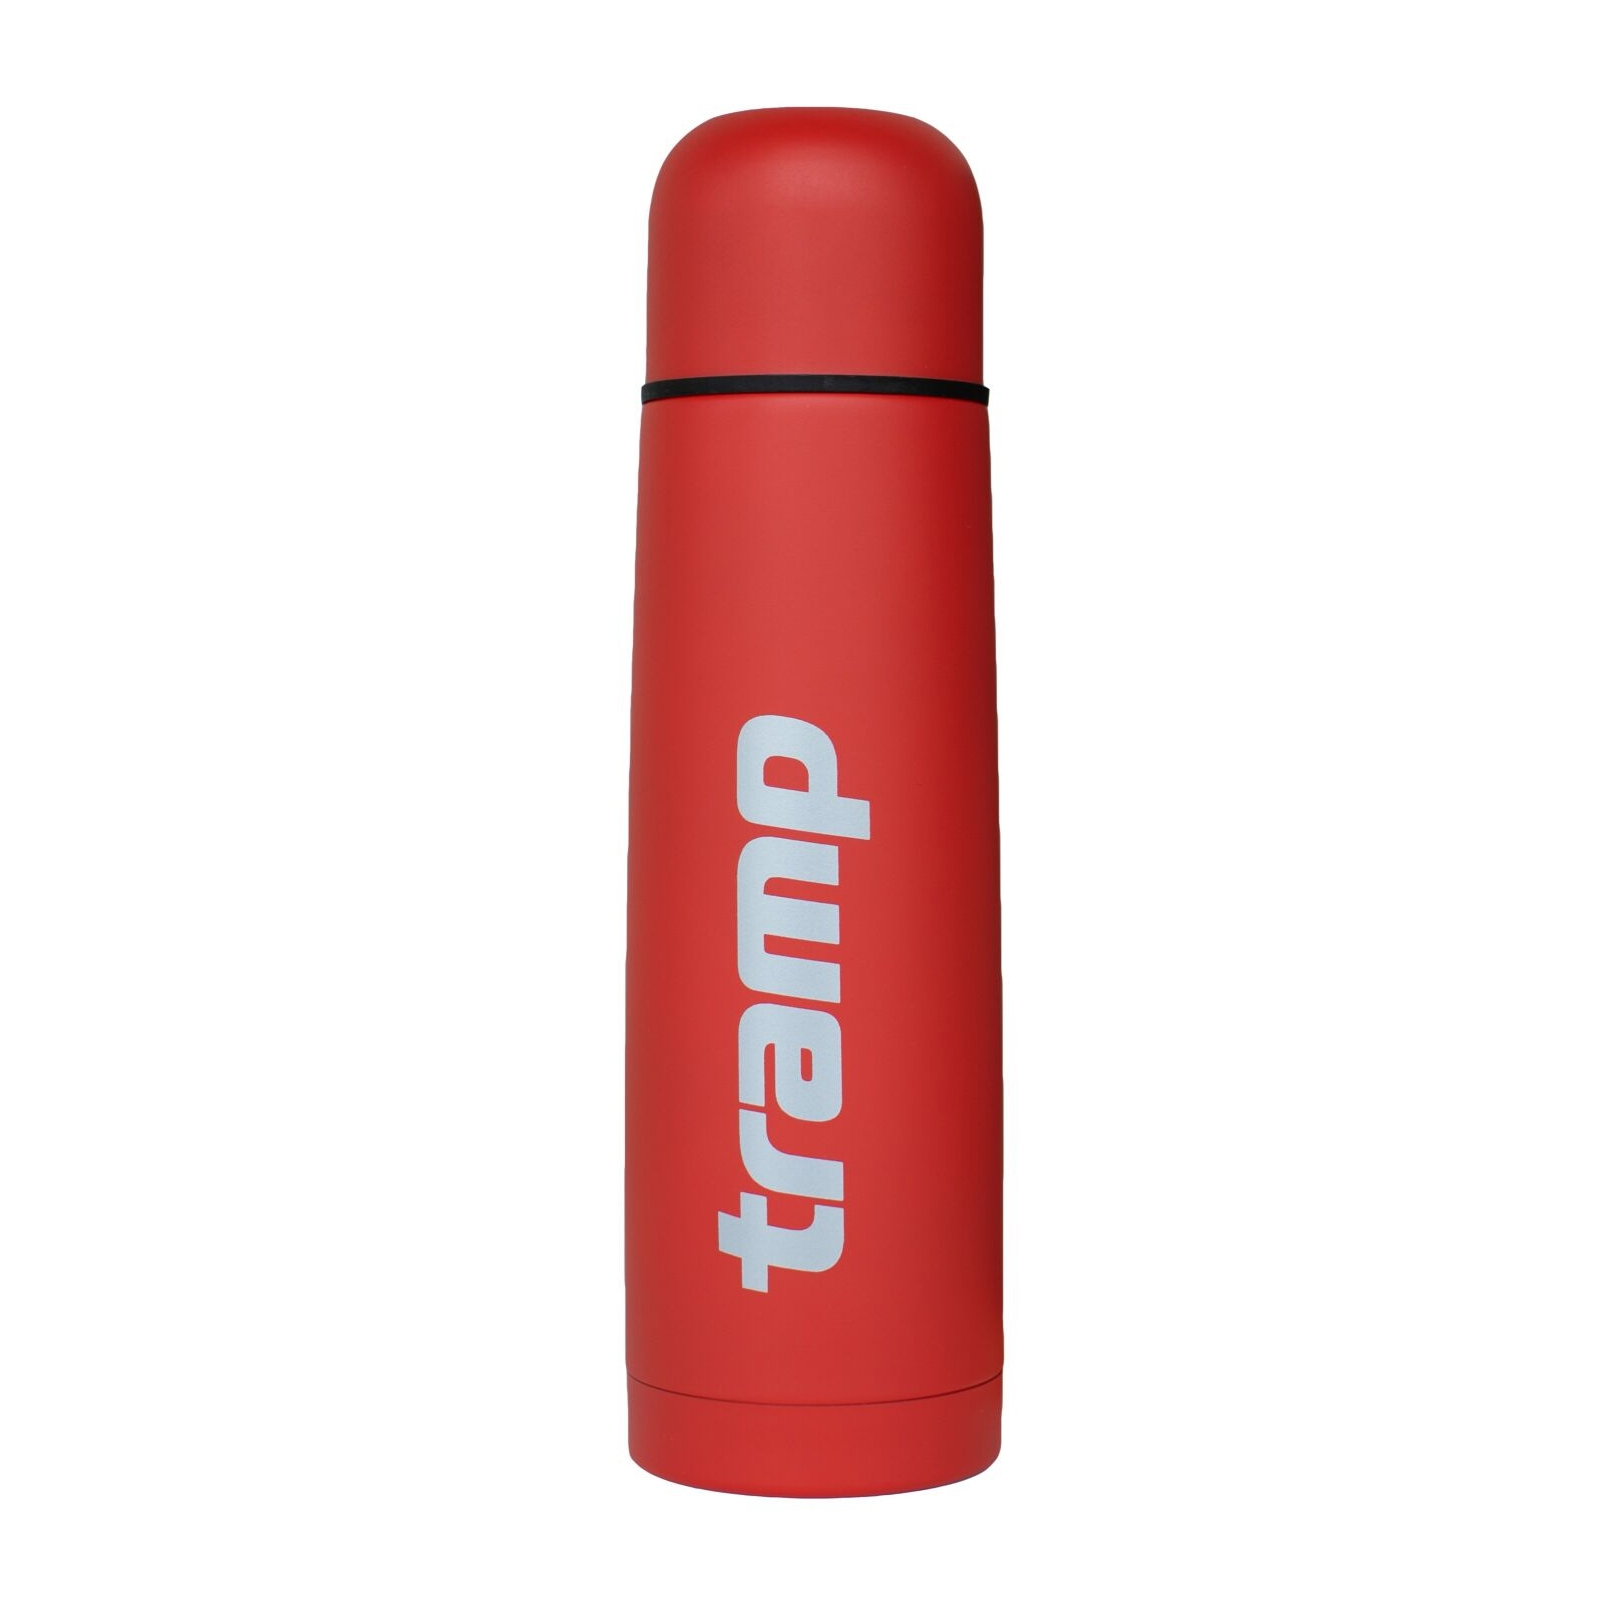 Термос Tramp Basic 0.5 л Red (TRC-111-red)